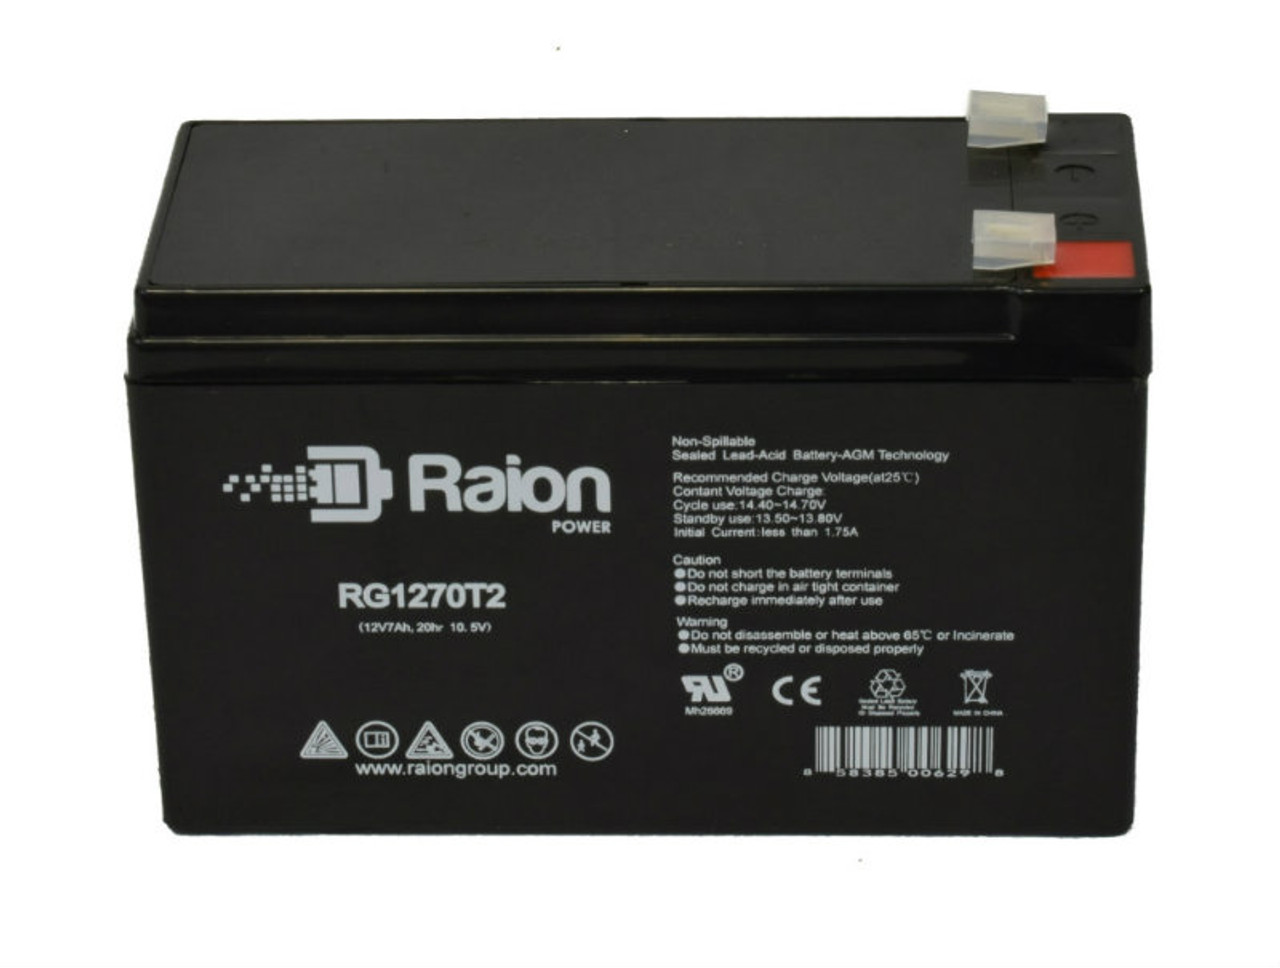 Raion Power RG1270T1 12V 7Ah Lead Acid Battery for FengSheng FS12-7